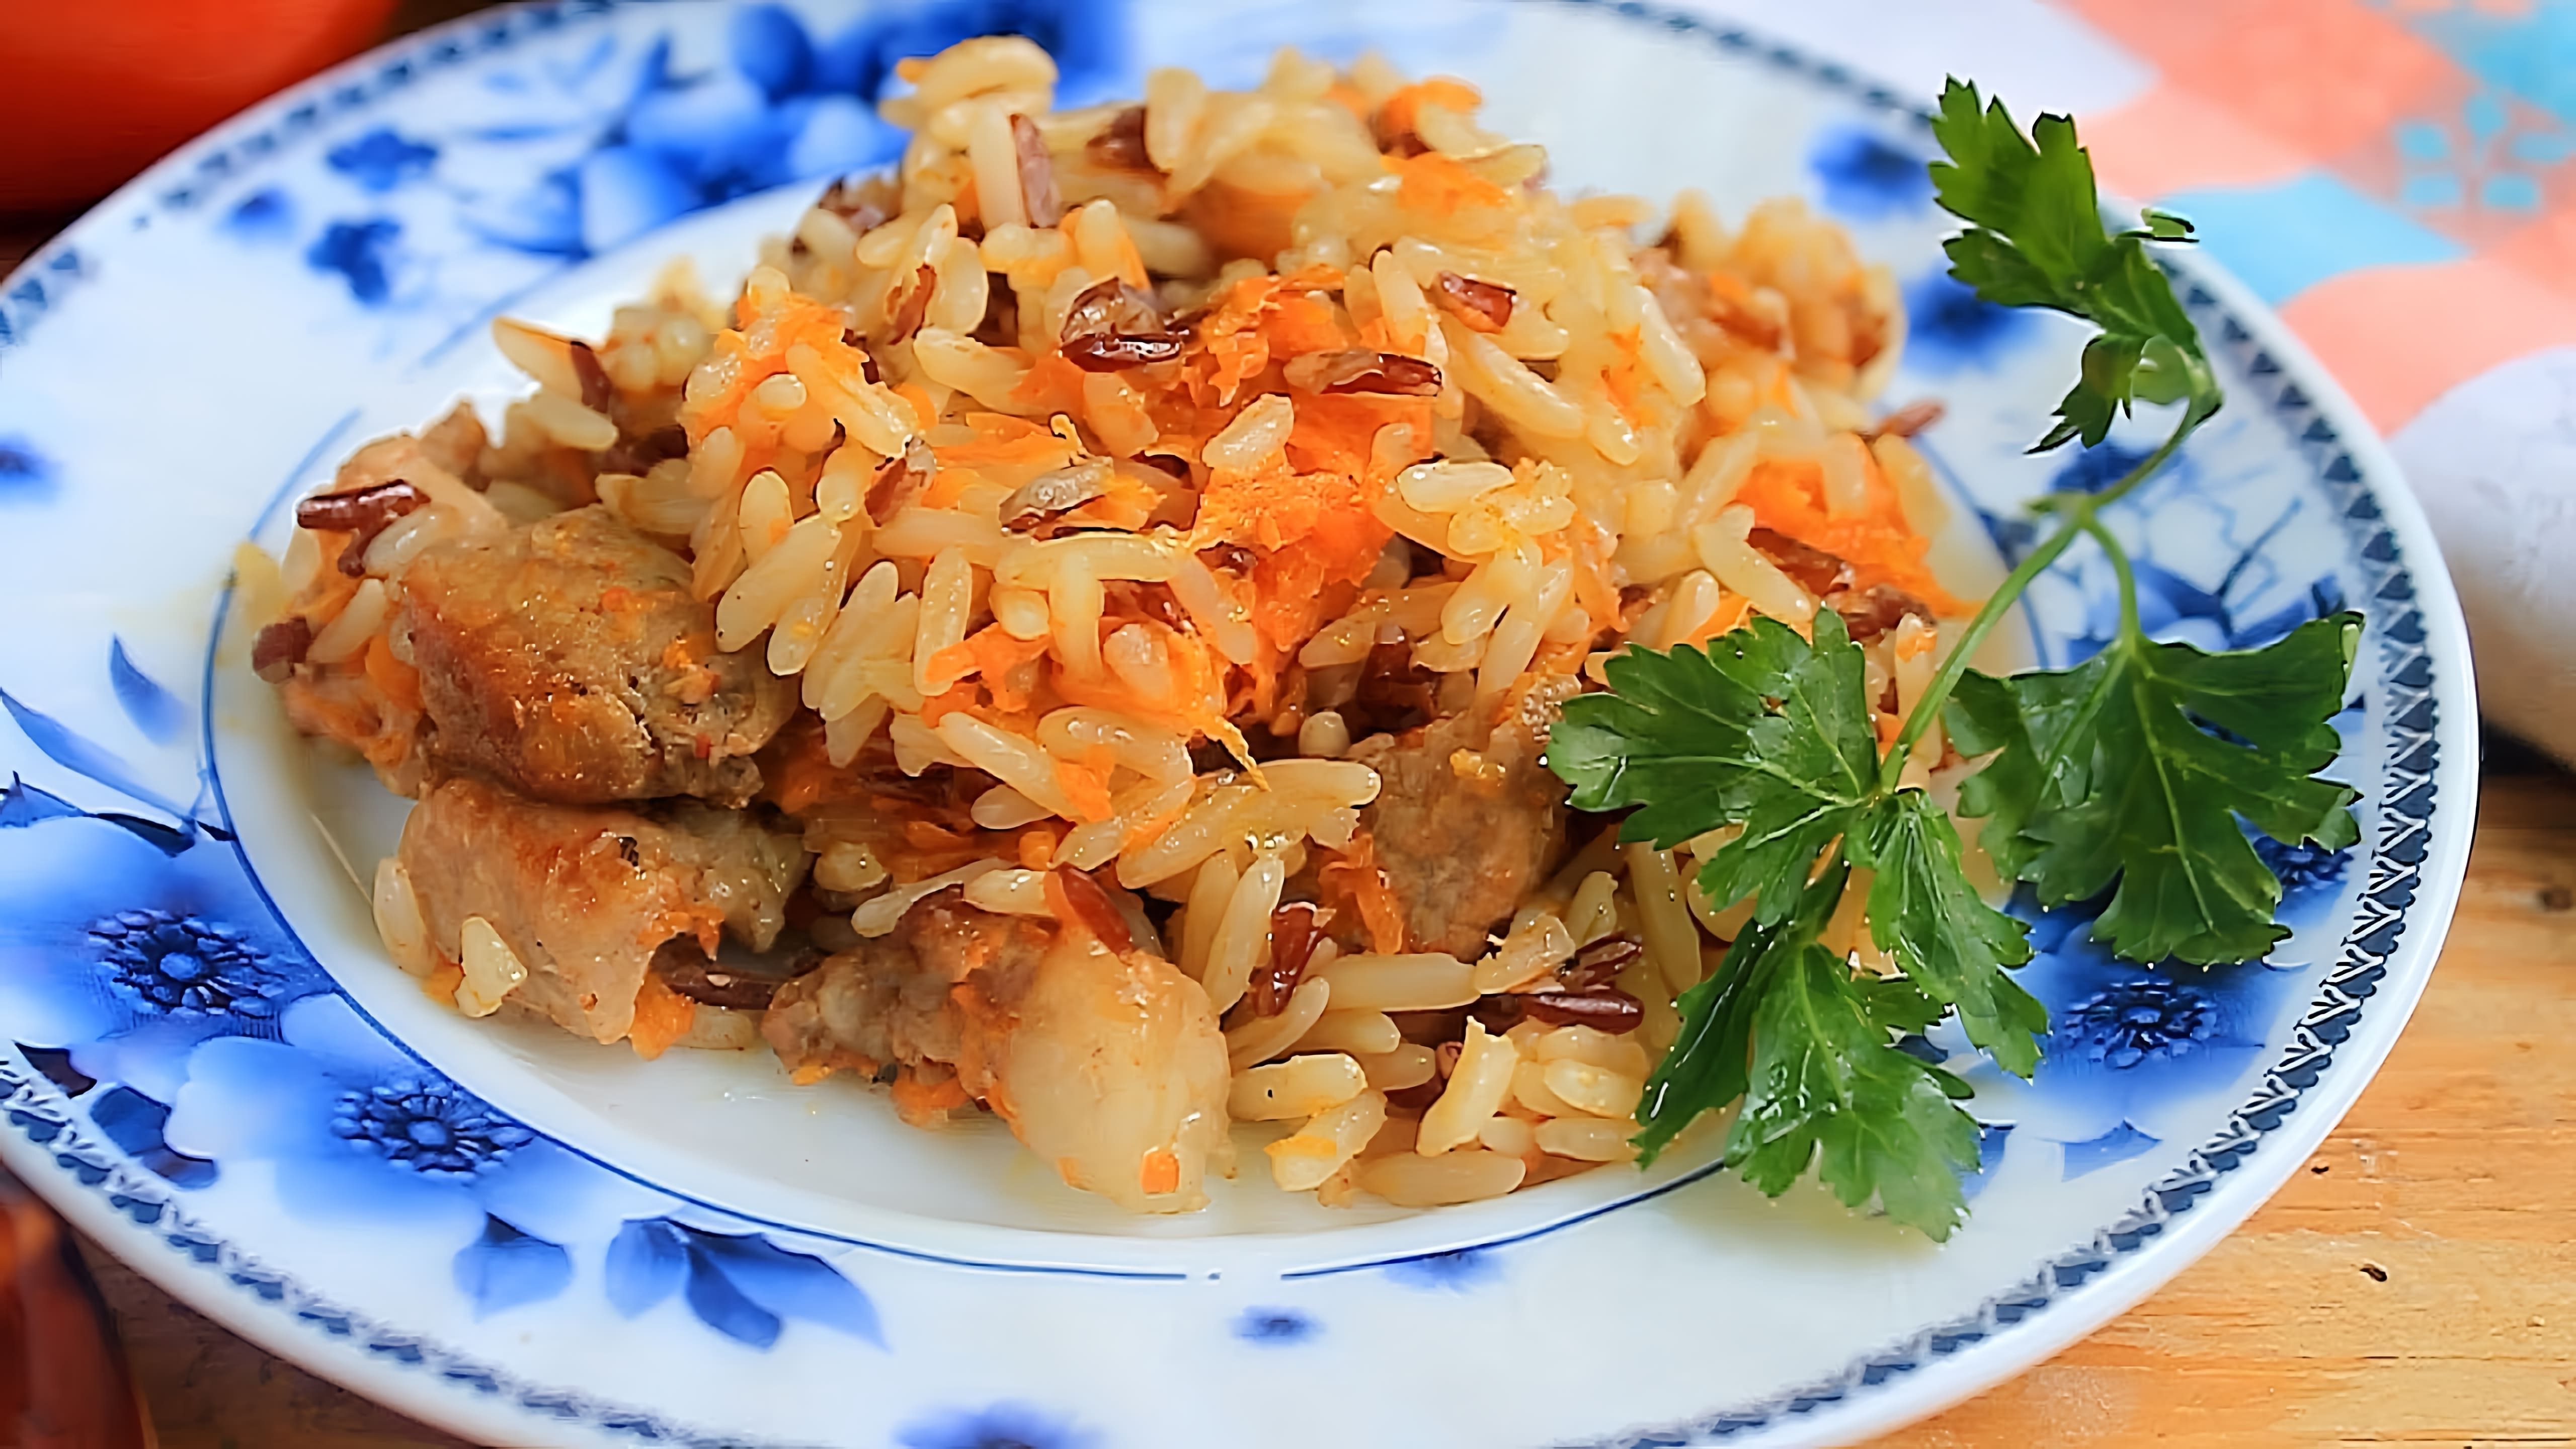 В этом видео демонстрируется рецепт приготовления риса в горшочках в духовке